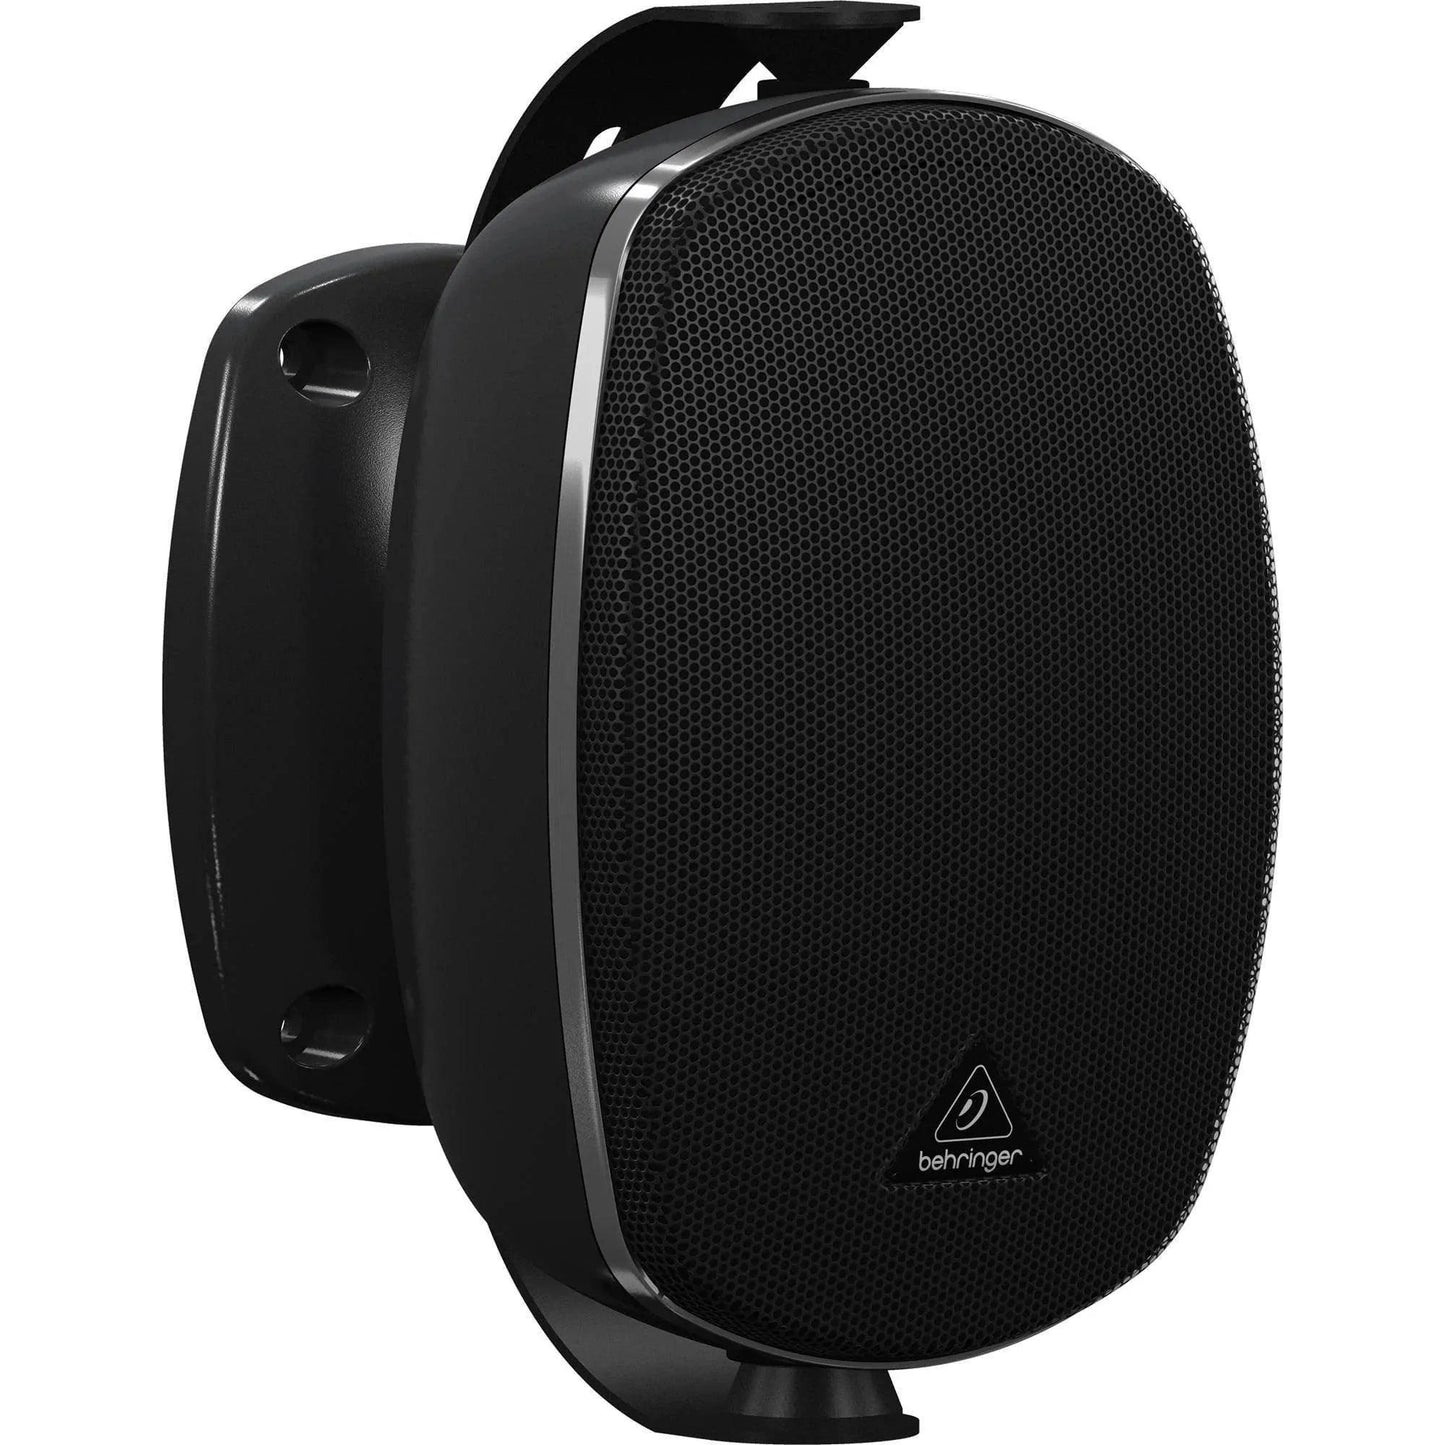 Behringer Eurocom SL4220 Speaker System - (Black/White)